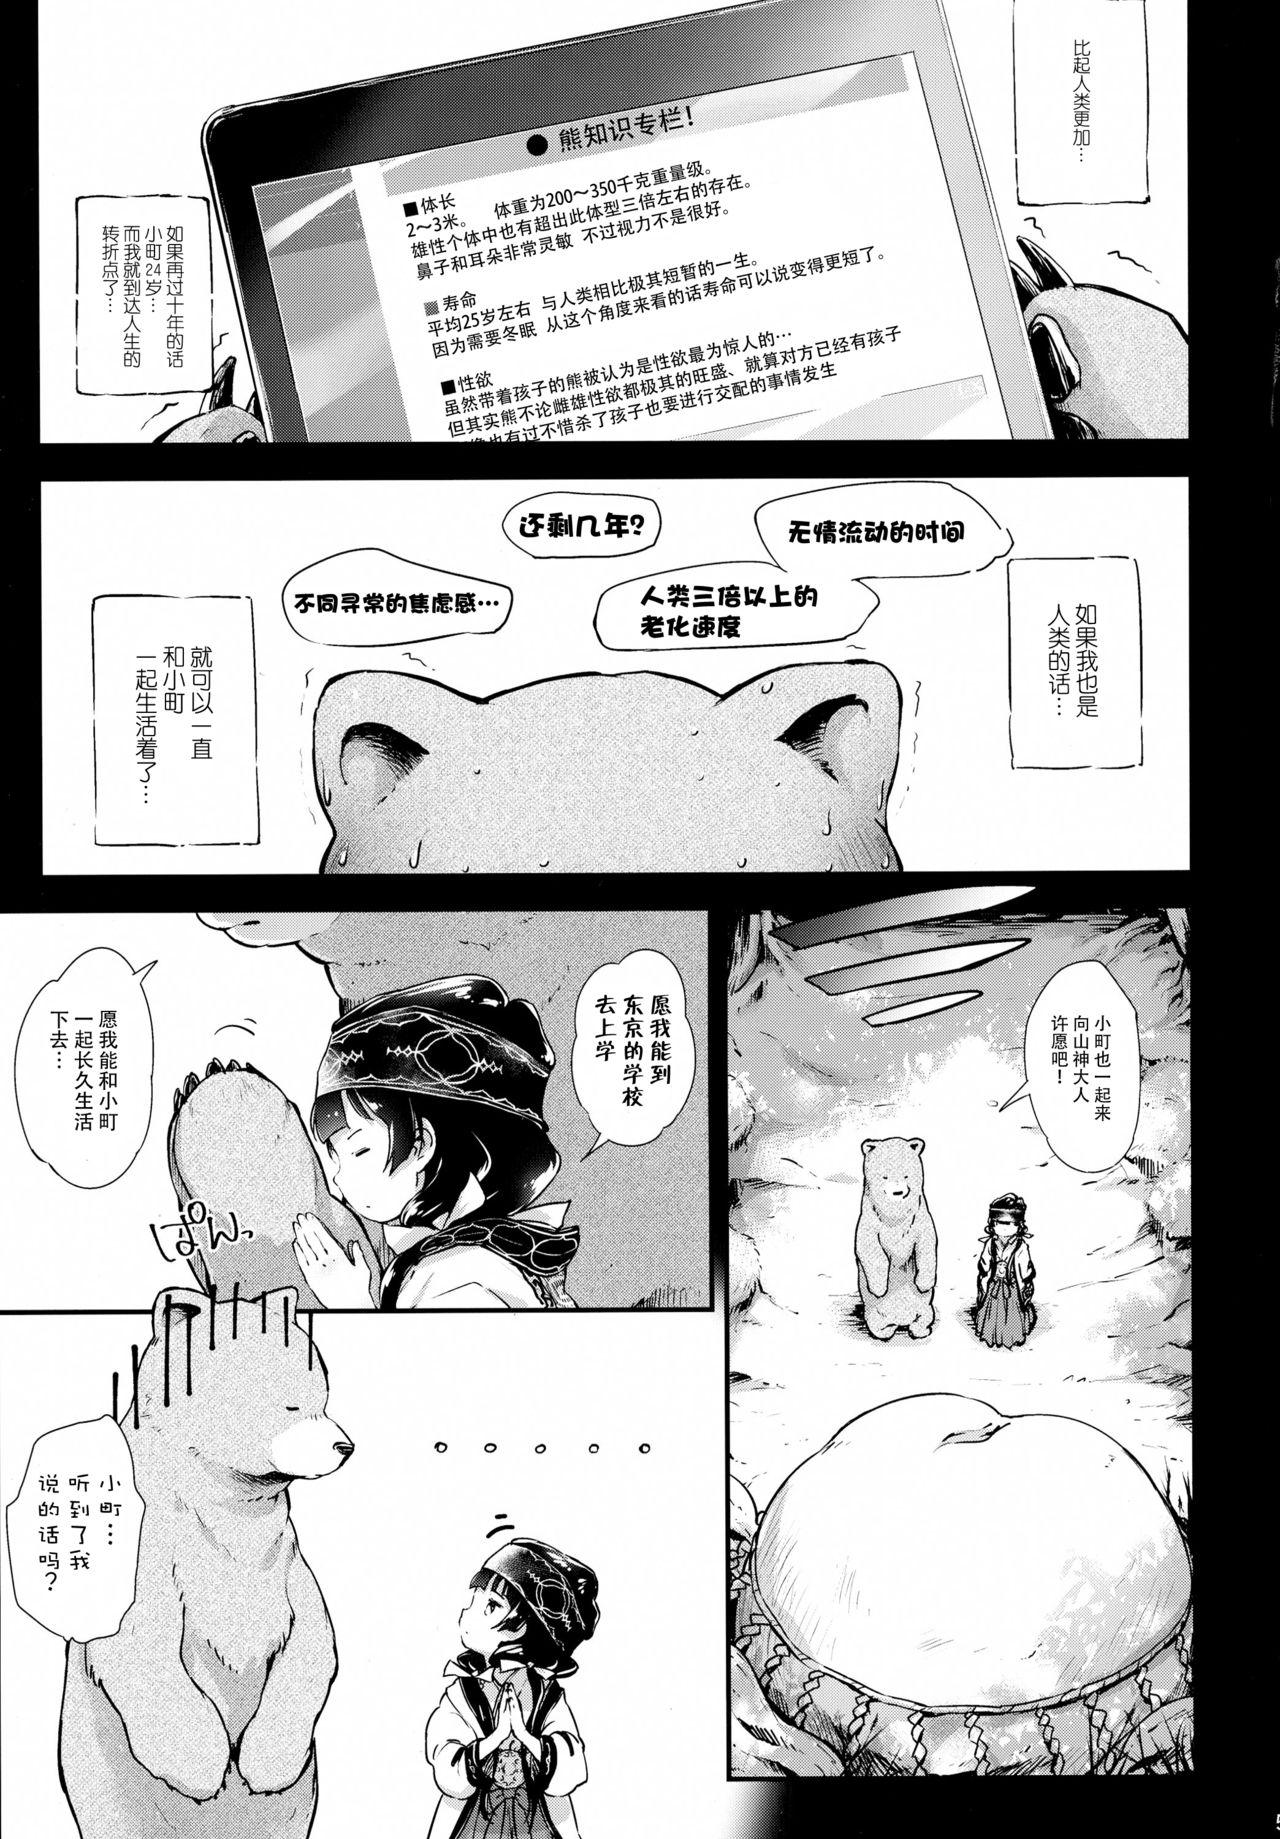 Mistress Toro Musume 9 Machi to Loli Kuma - Kuma miko Pmv - Page 6